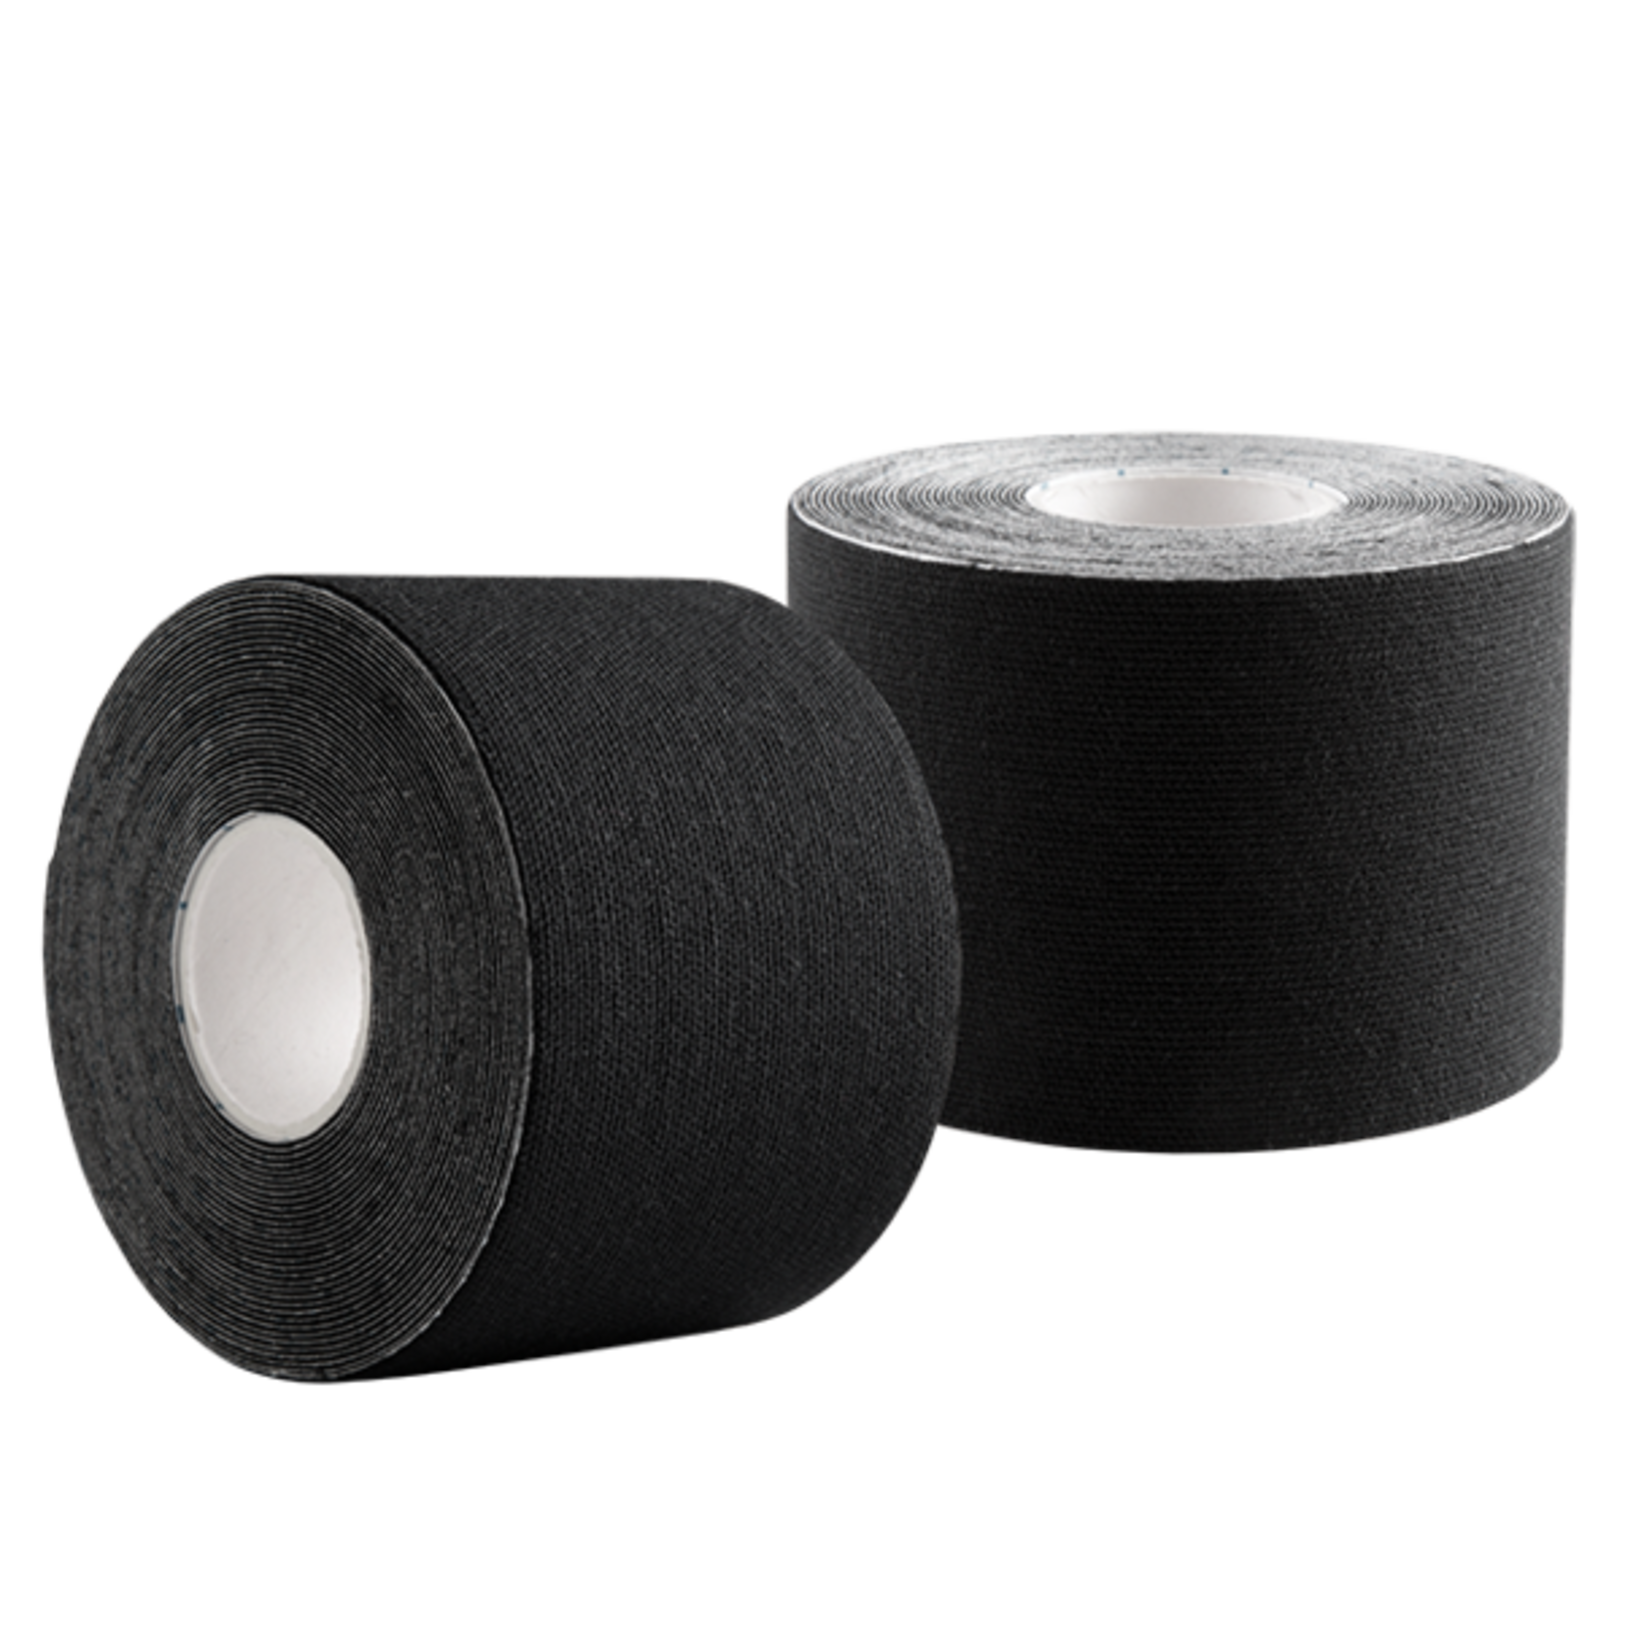 McDavid Kinesiology Tape Black 2 x 16.4 Foot Roll